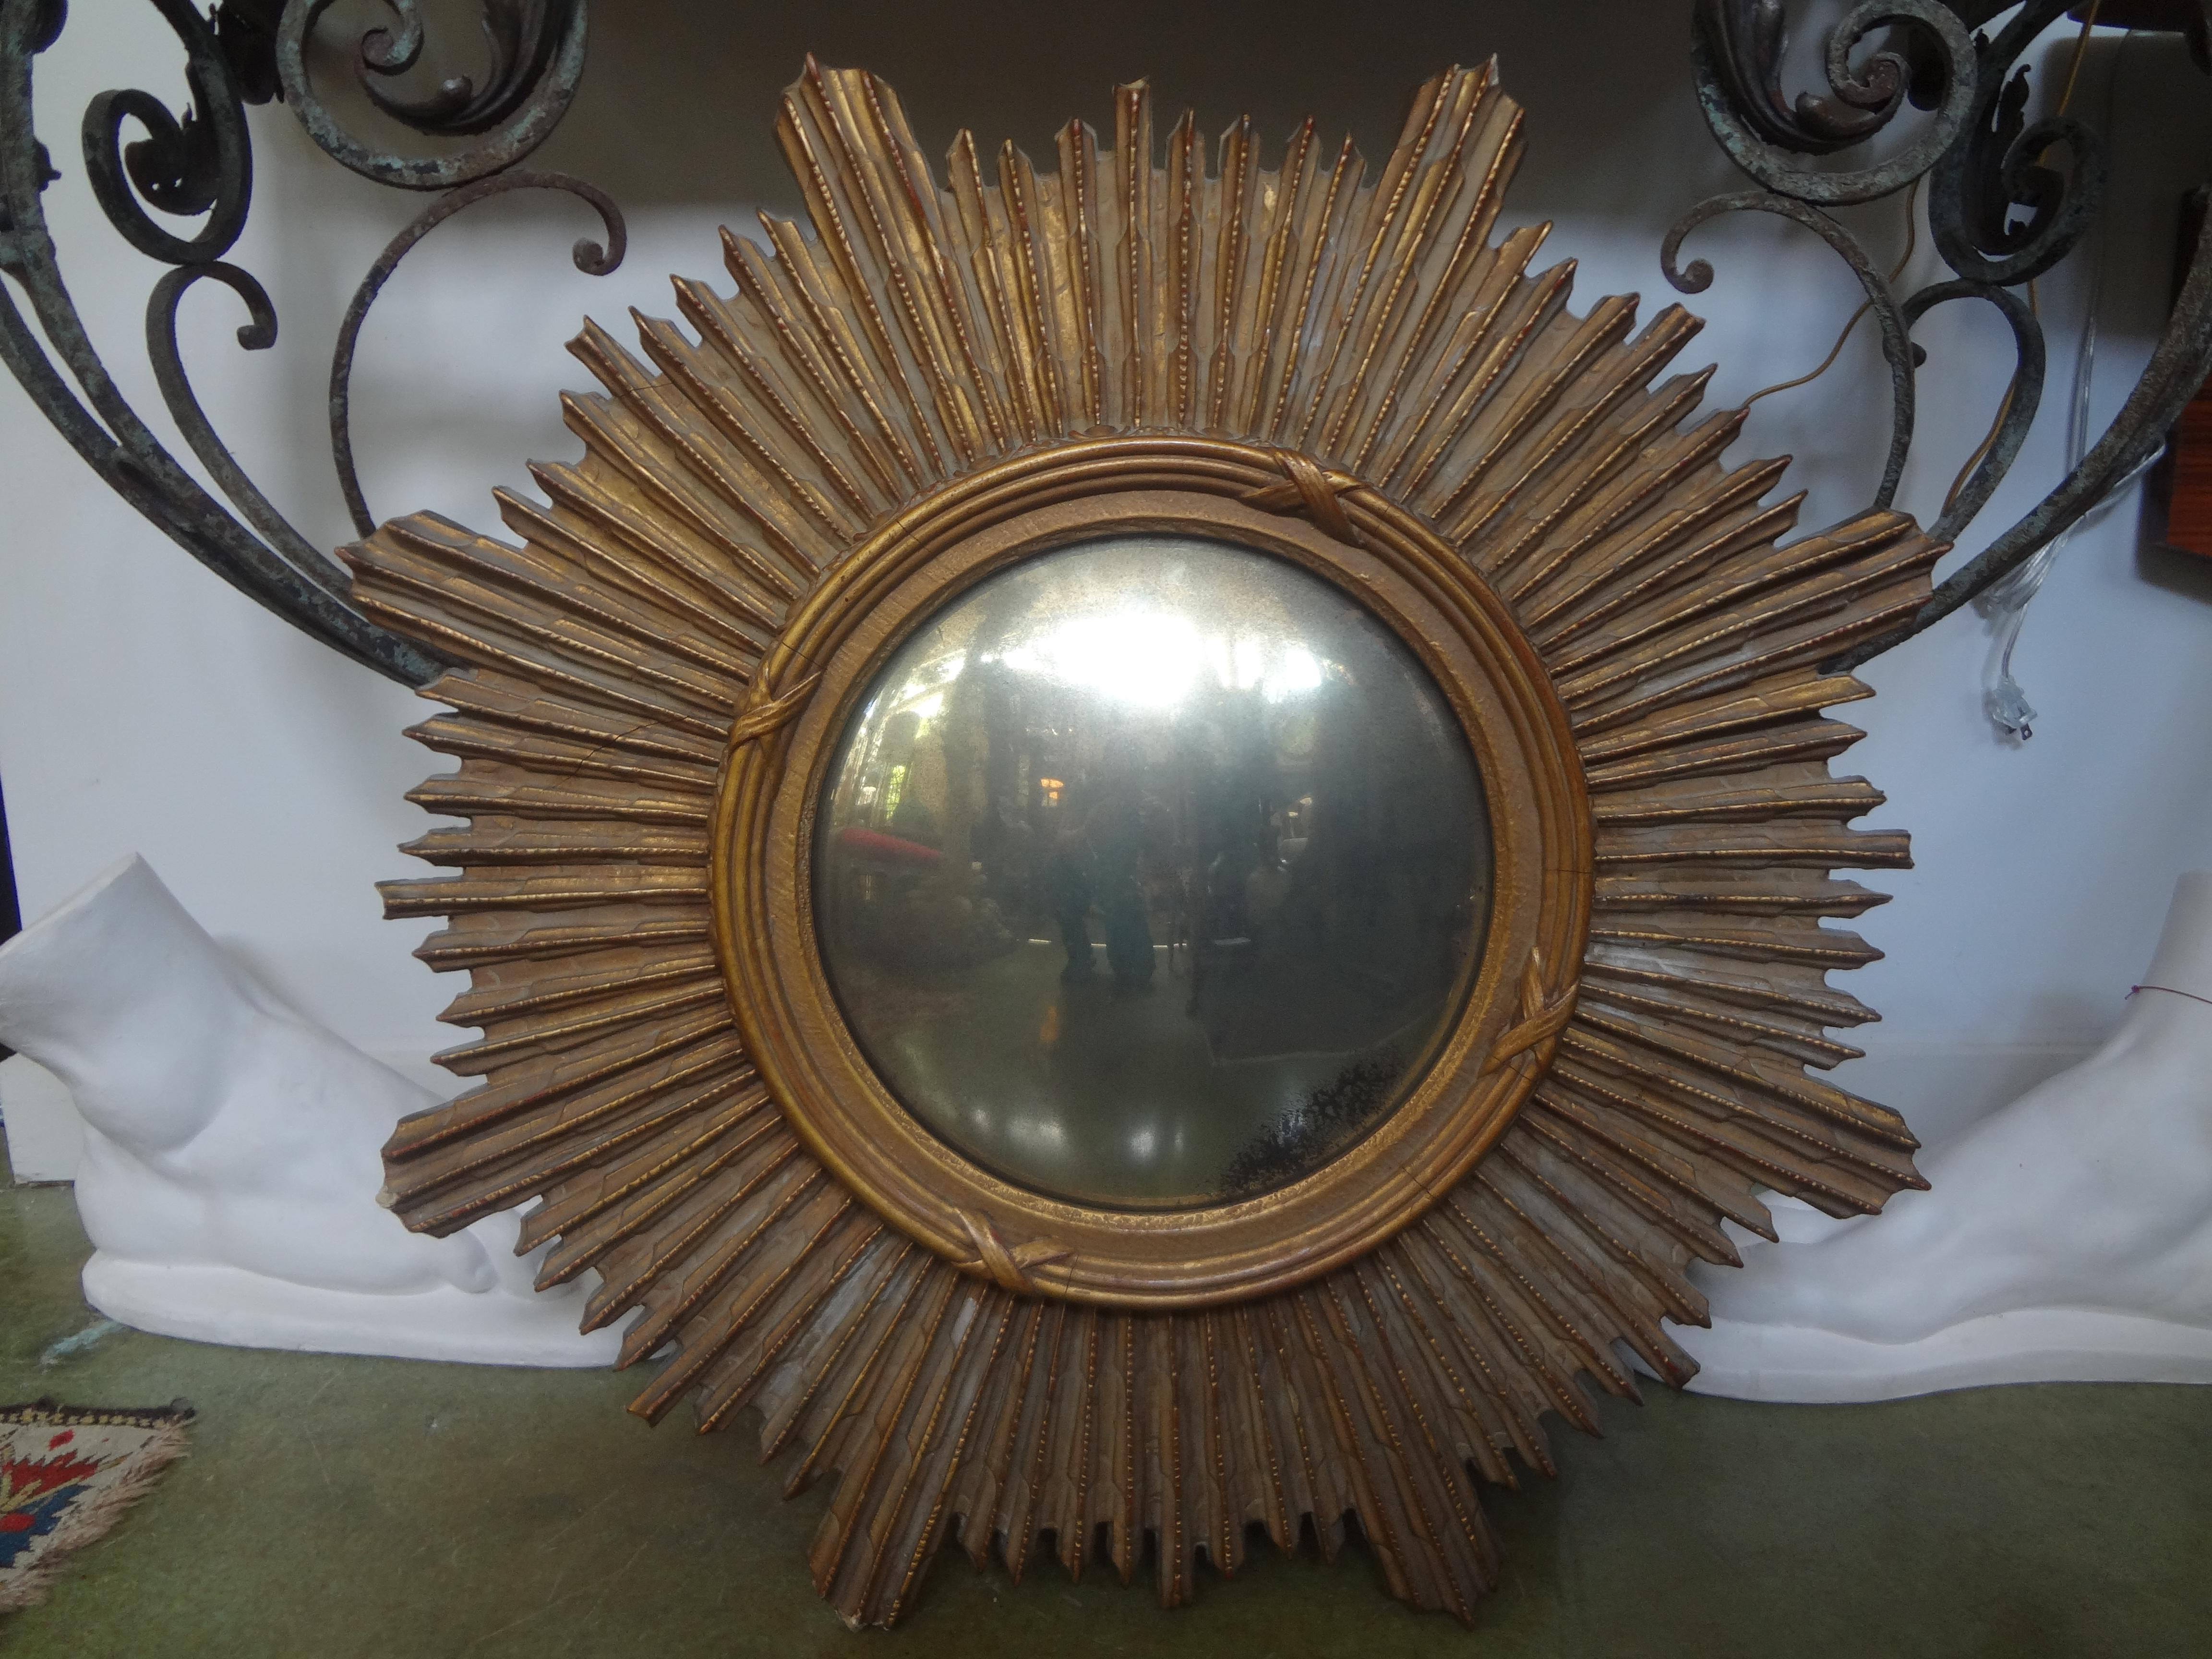 Miroir convexe en bois doré. Ce superbe miroir en bois sculpté et doré a une patine chaude et ancienne et une bonne taille. Magnifique miroir convexe vieilli.